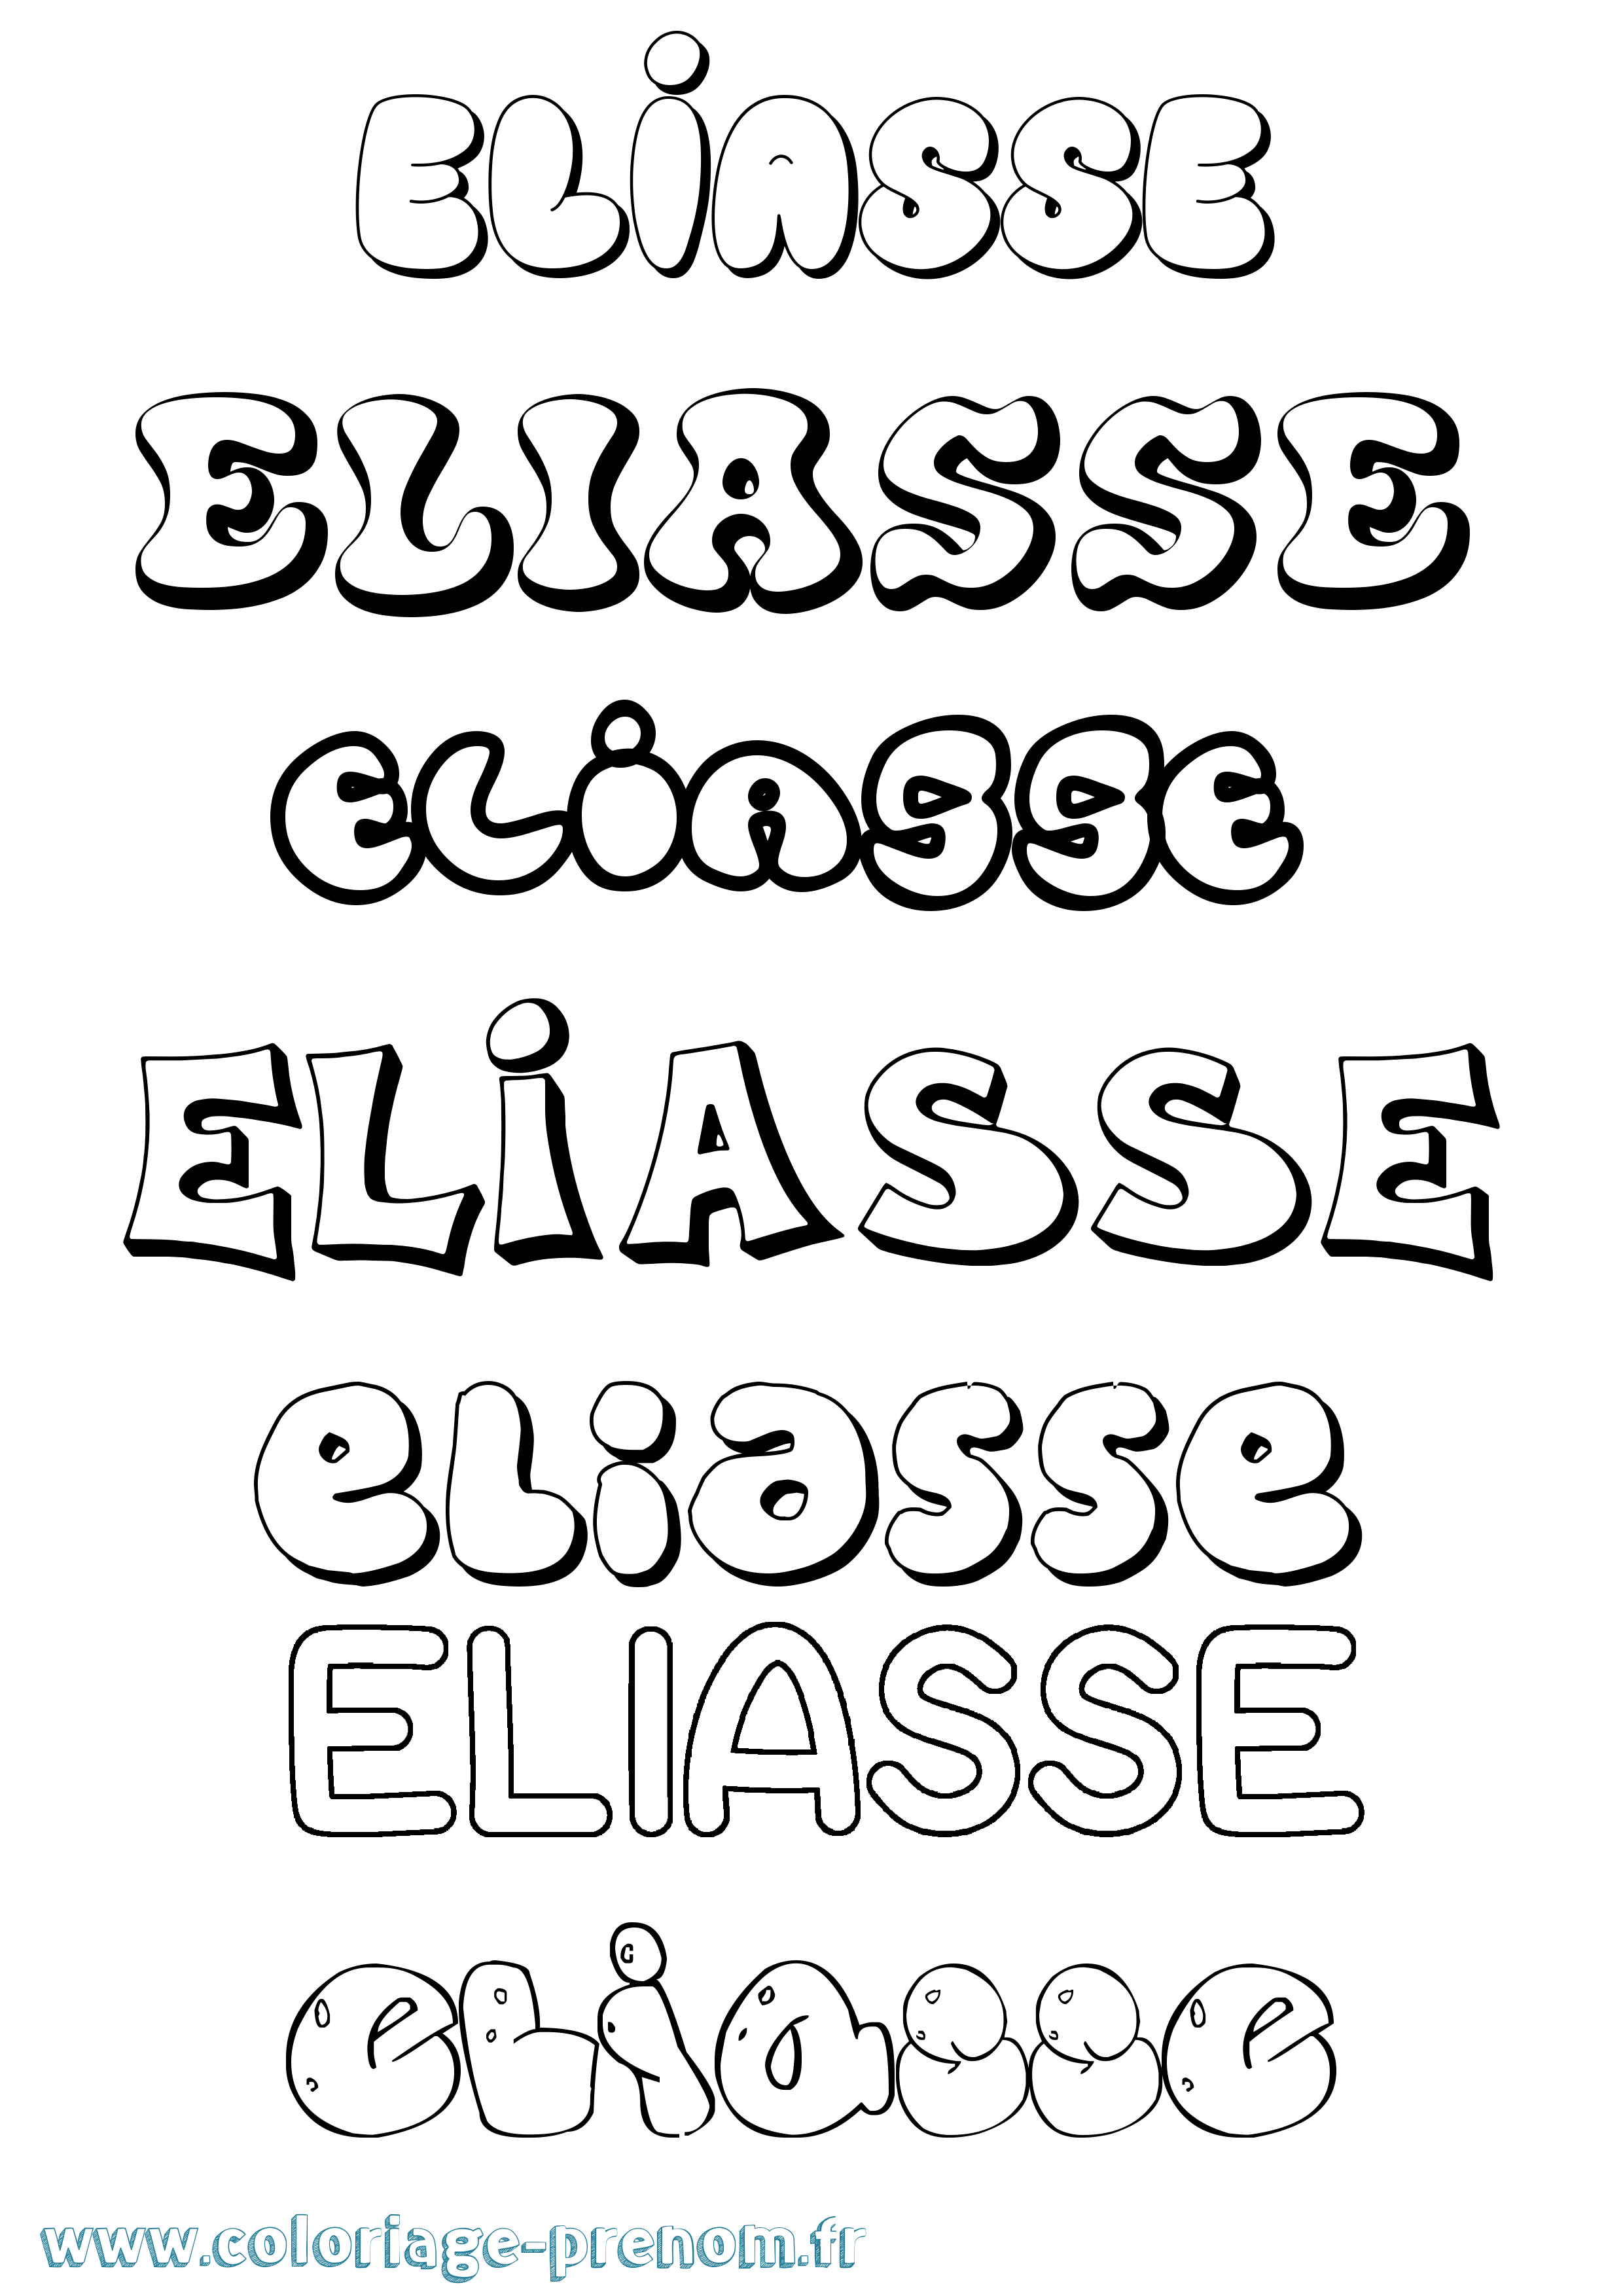 Coloriage prénom Eliasse Bubble